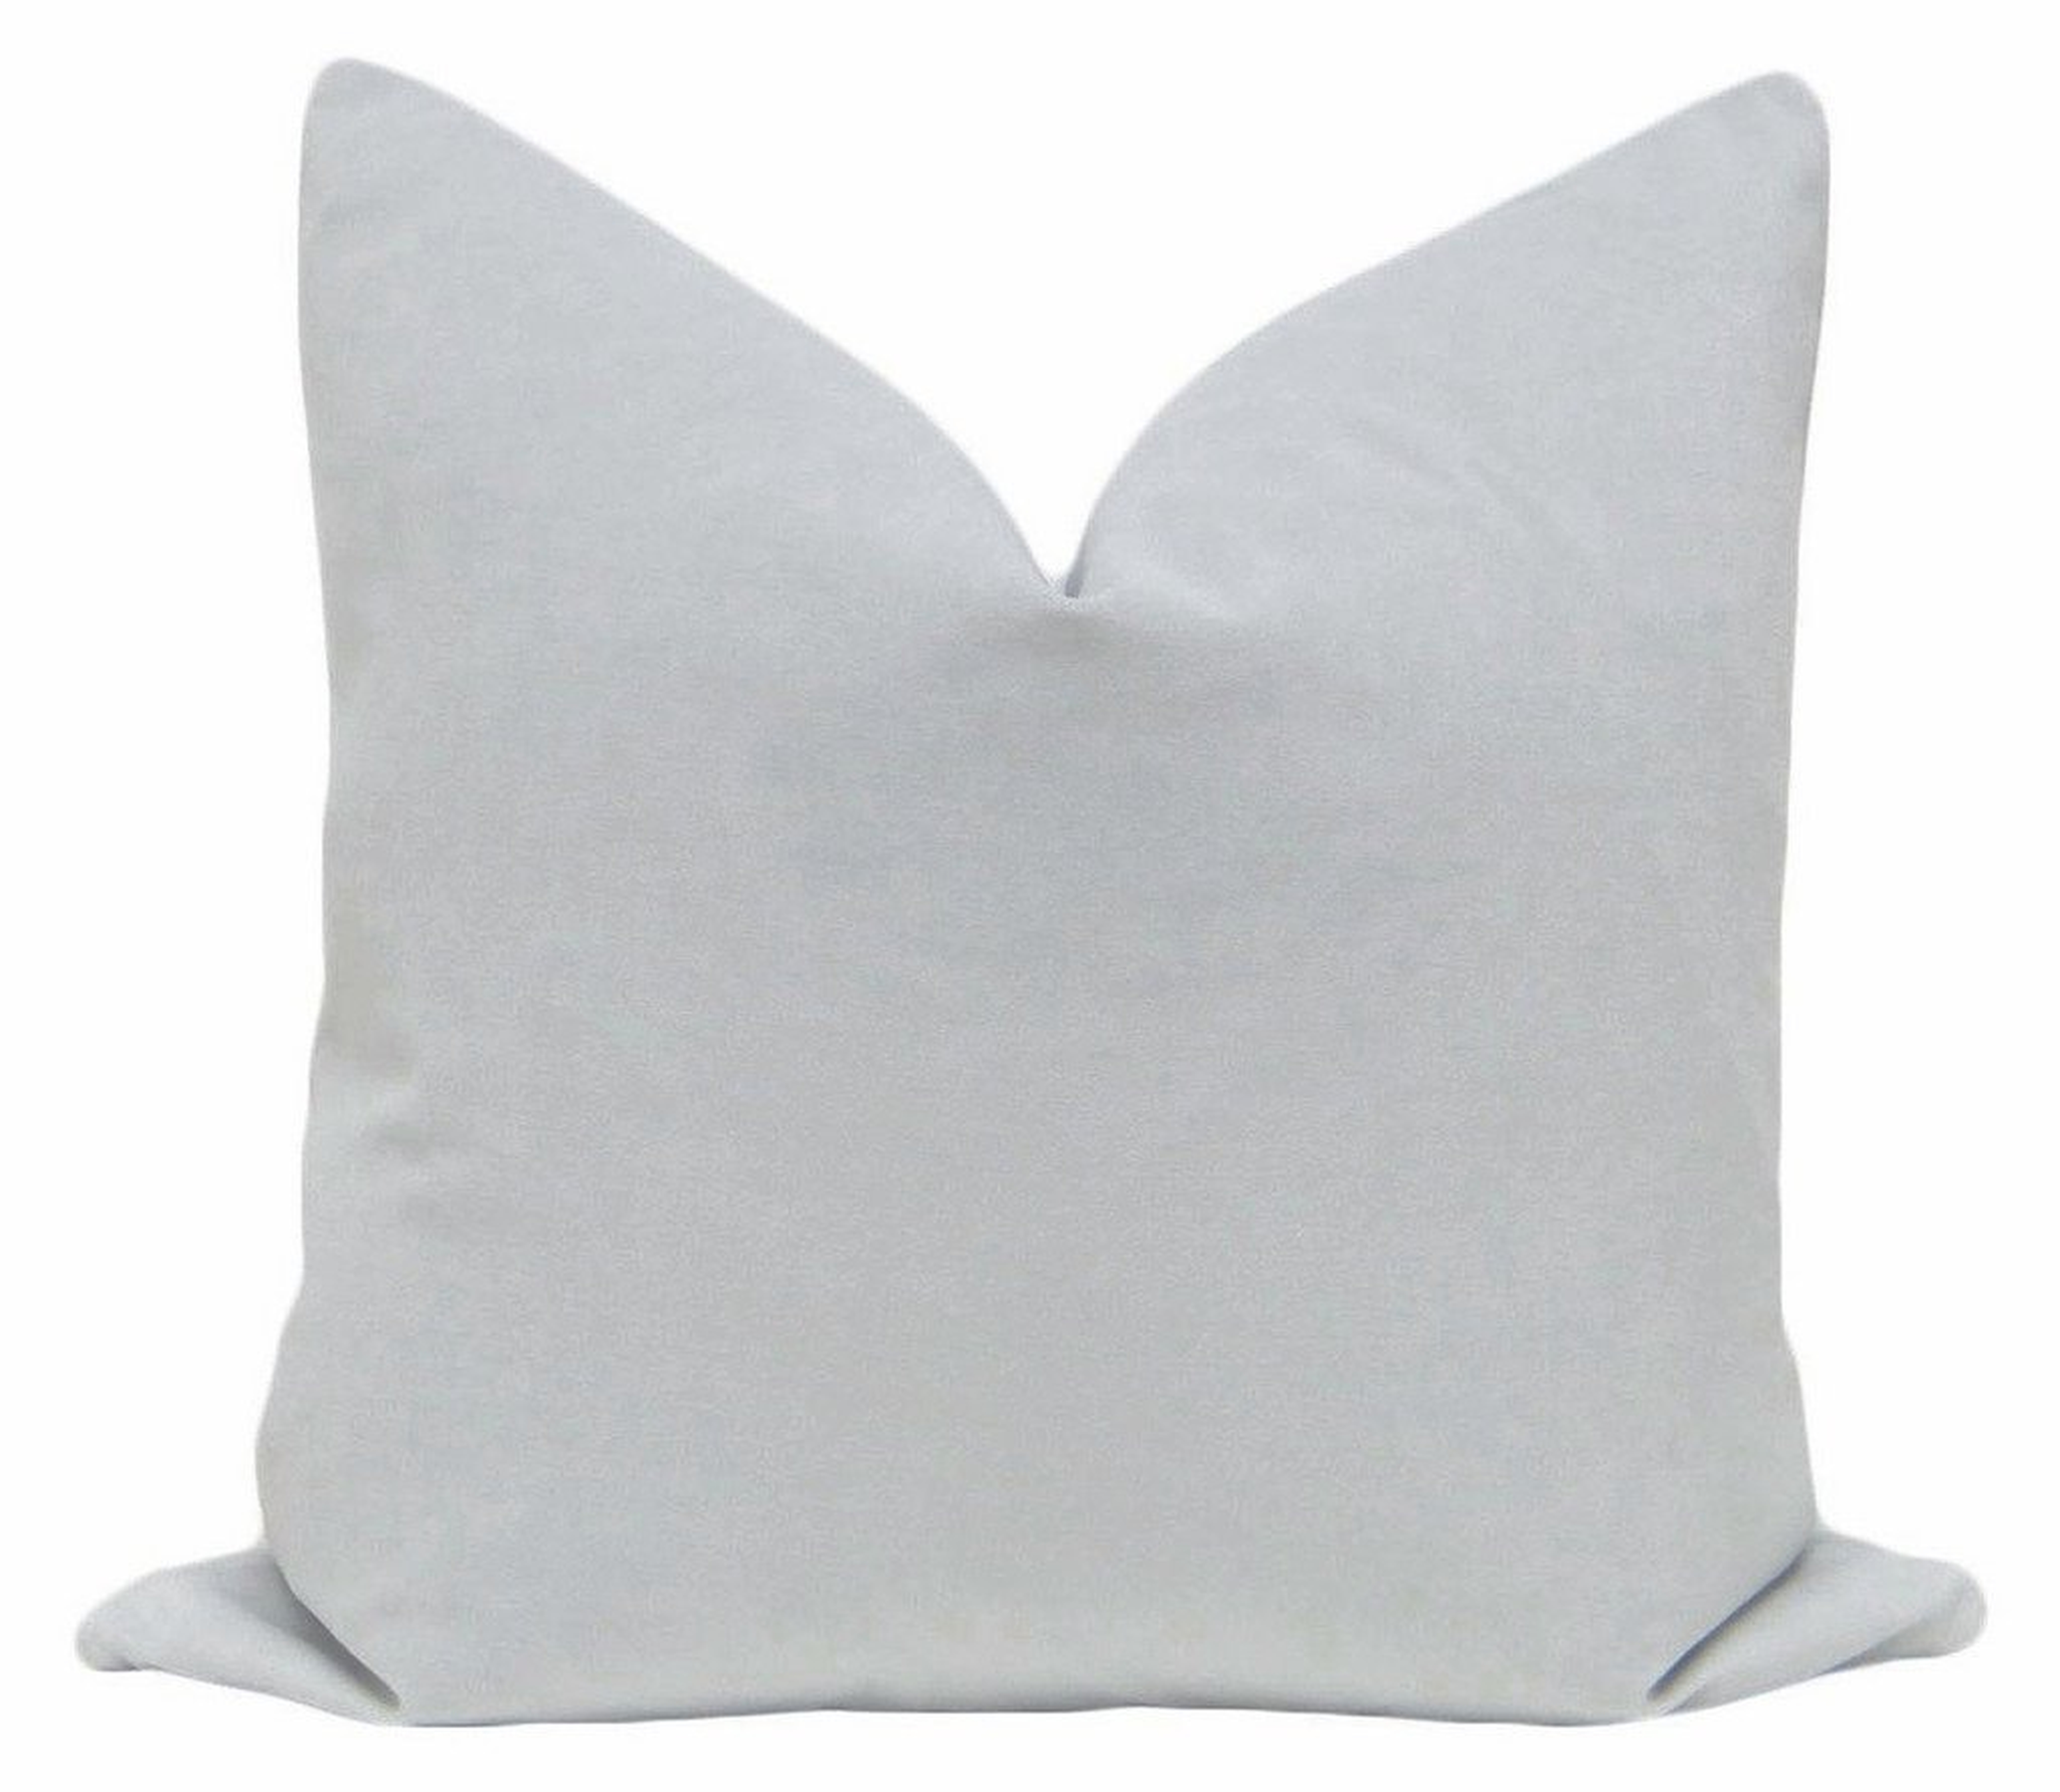 Signature Velvet // Mist, 20" Pillow Cover - Little Design Company